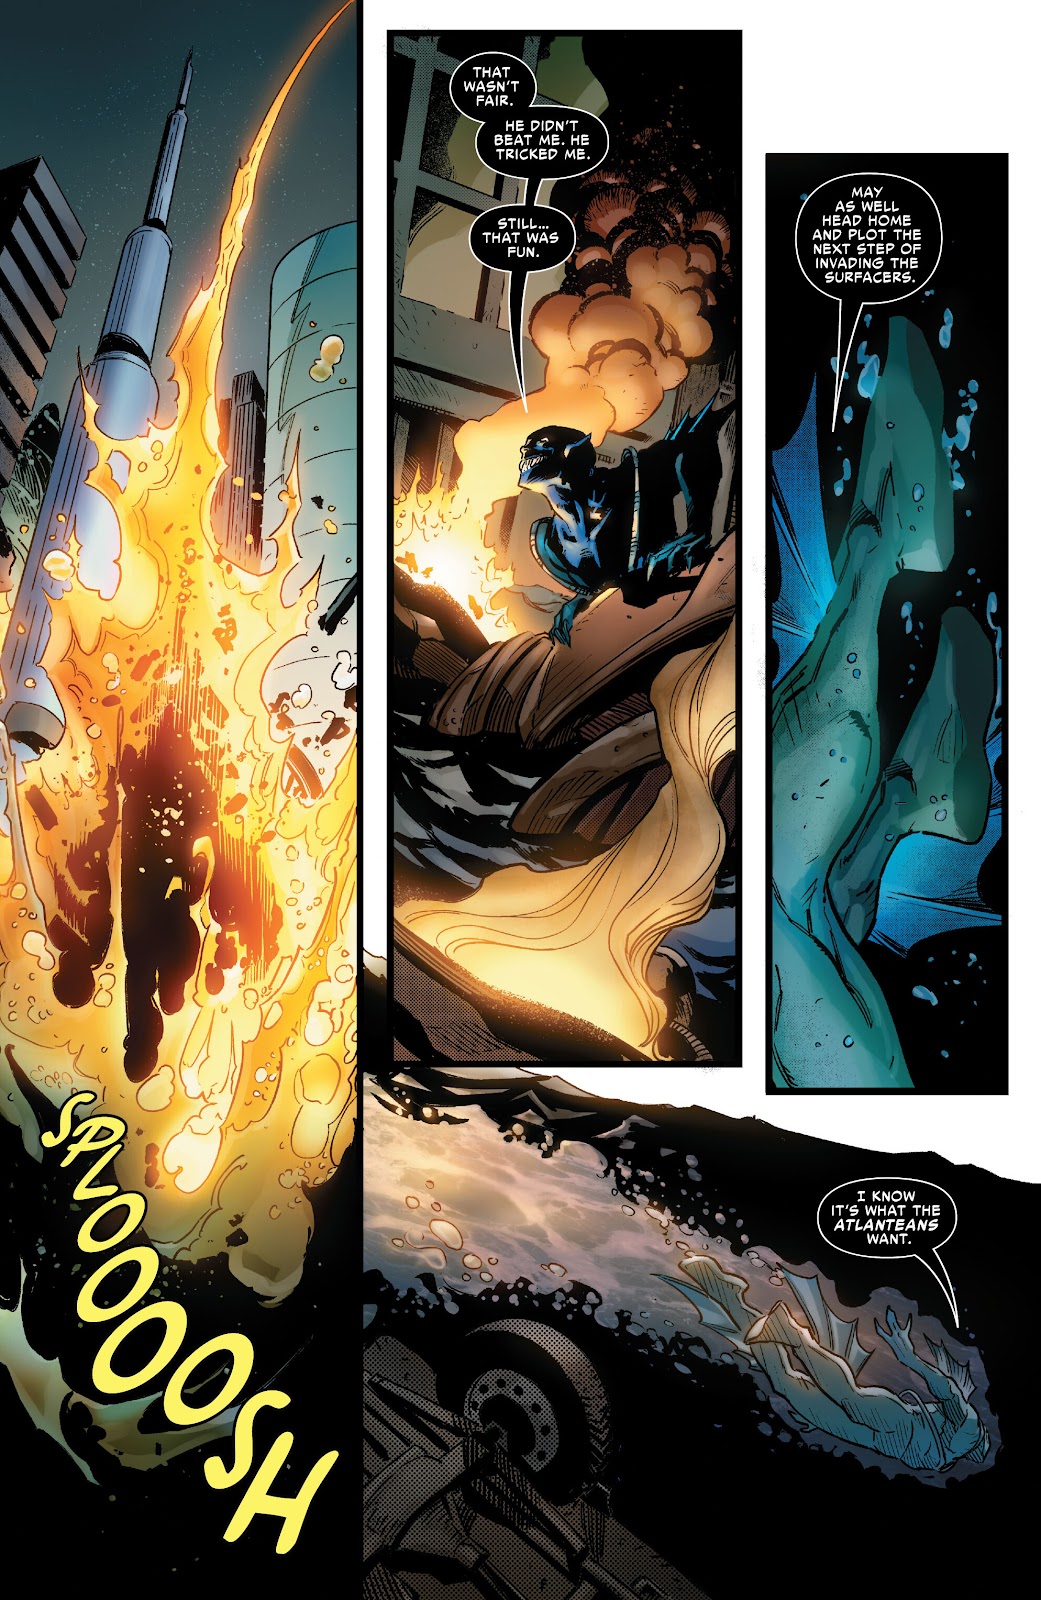 Symbiote Spider-Man 2099 issue 1 - Page 10